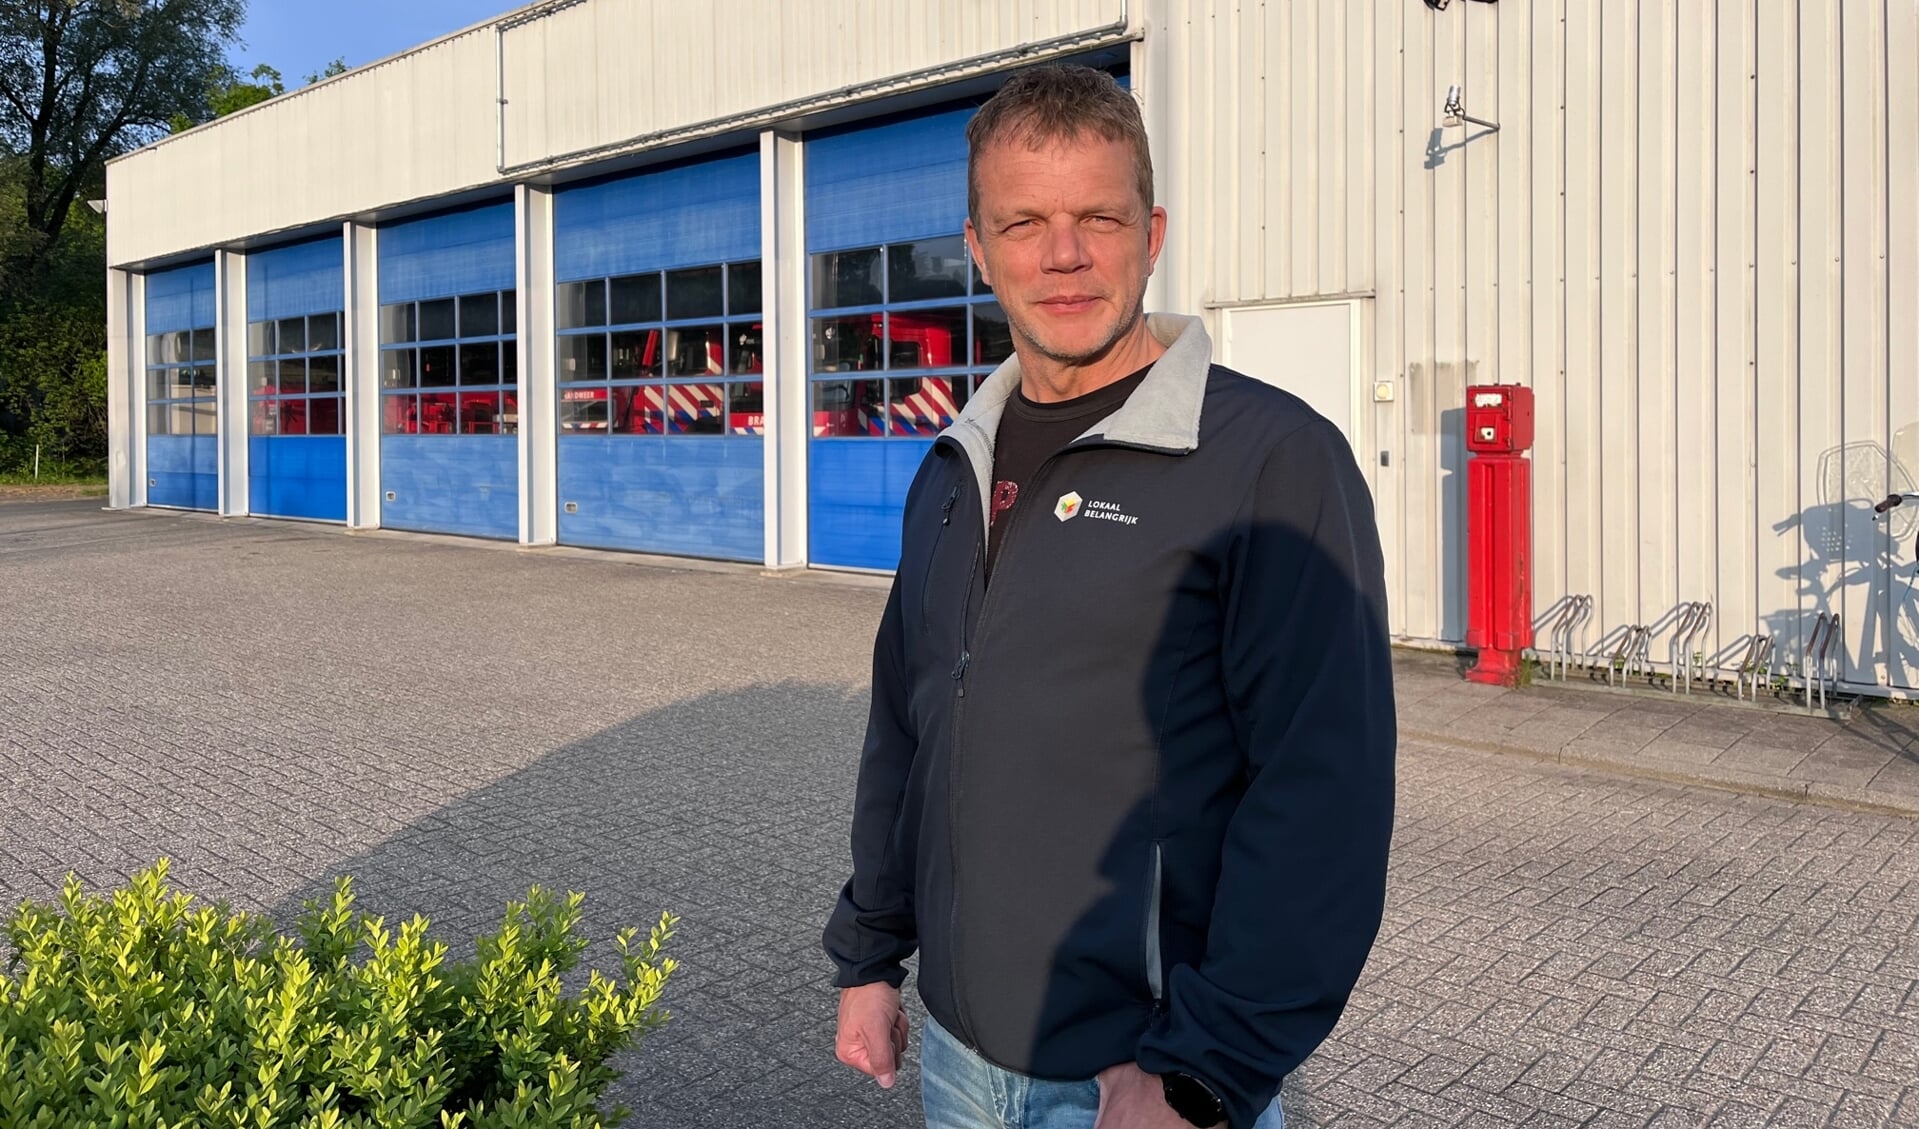 Erik-Jan van Lutterveld: 'Helaas is Leusden niet alleen aantrekkelijk voor ons bewoners, maar ook voor criminelen.'